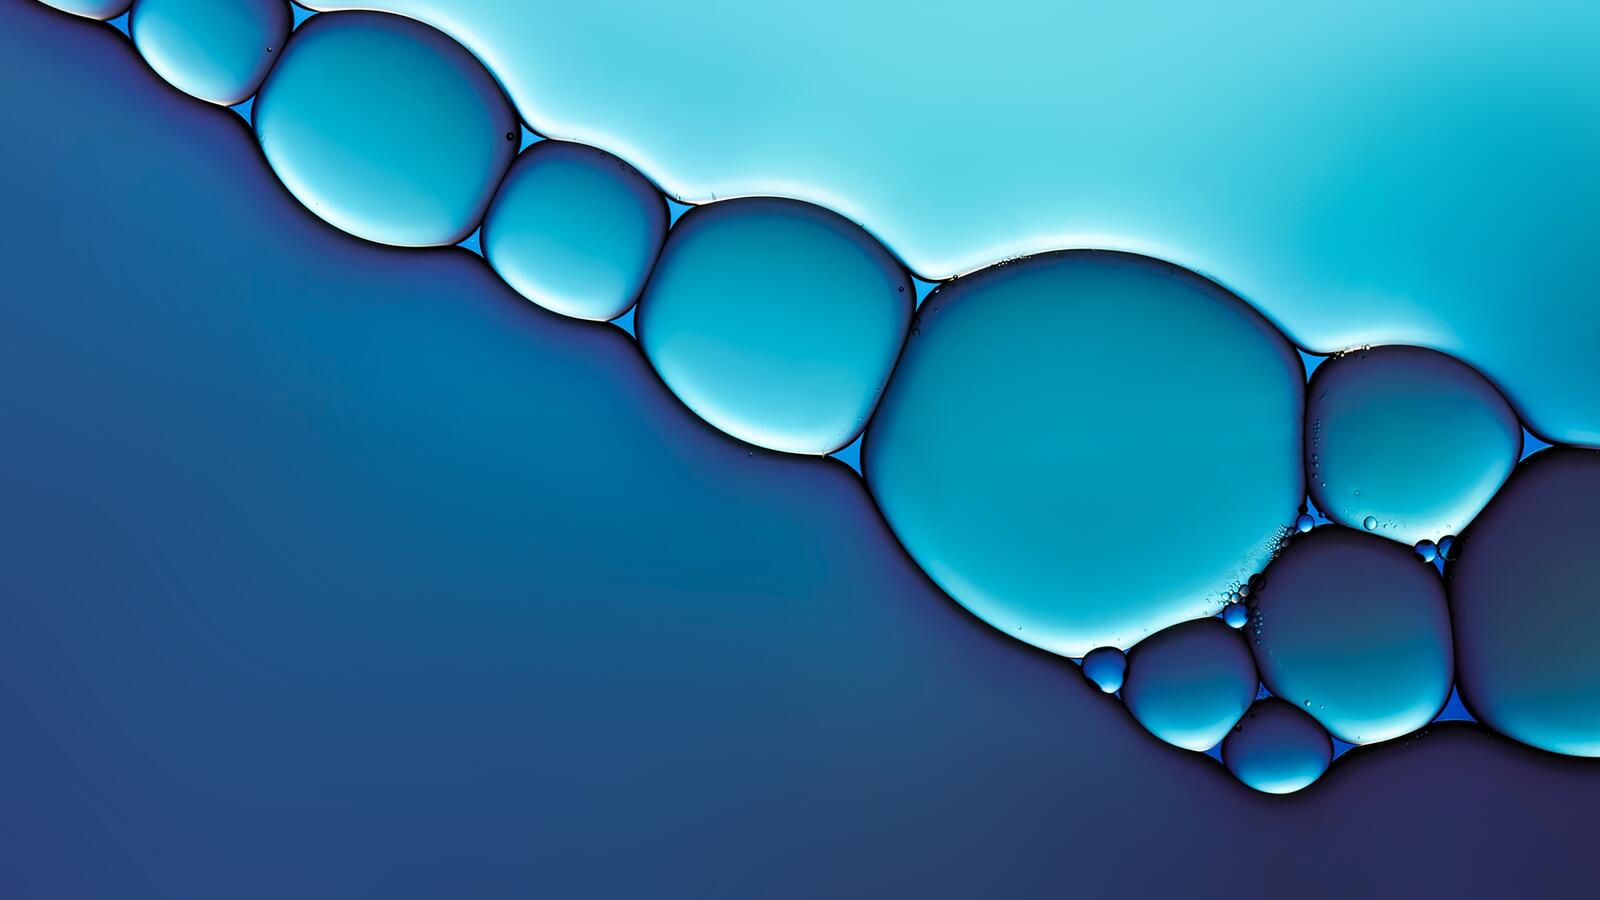 Wallpapers aqua wallpaper liquid bubbles bubbles on the desktop